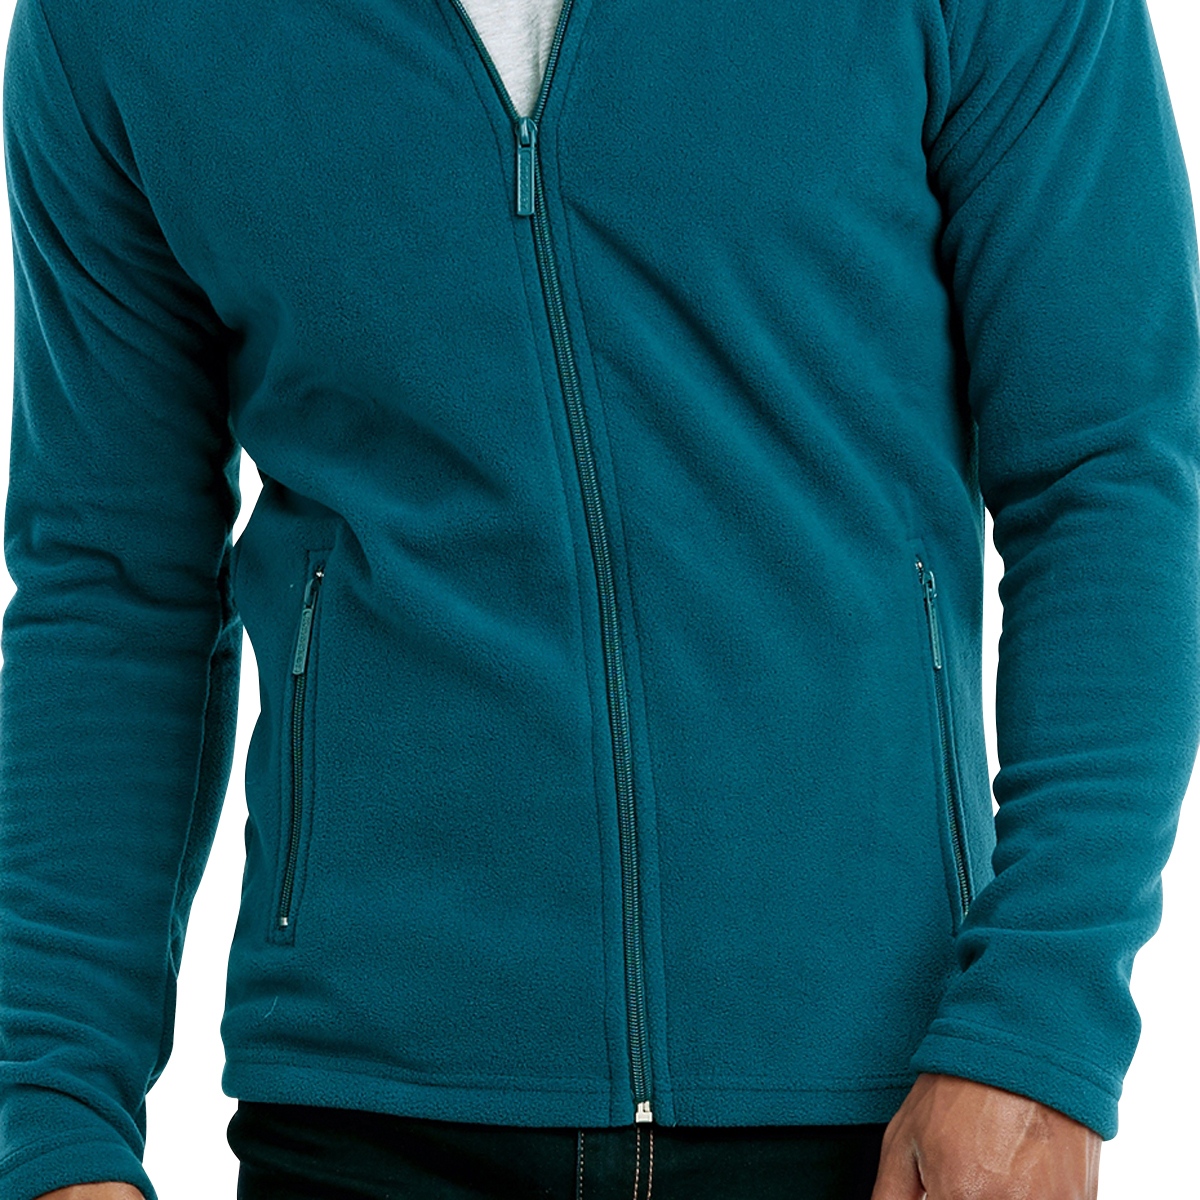 Sayah Mens Zipper Fall & Winter Long-Sleeve Casual Turtleneck Sweaters 